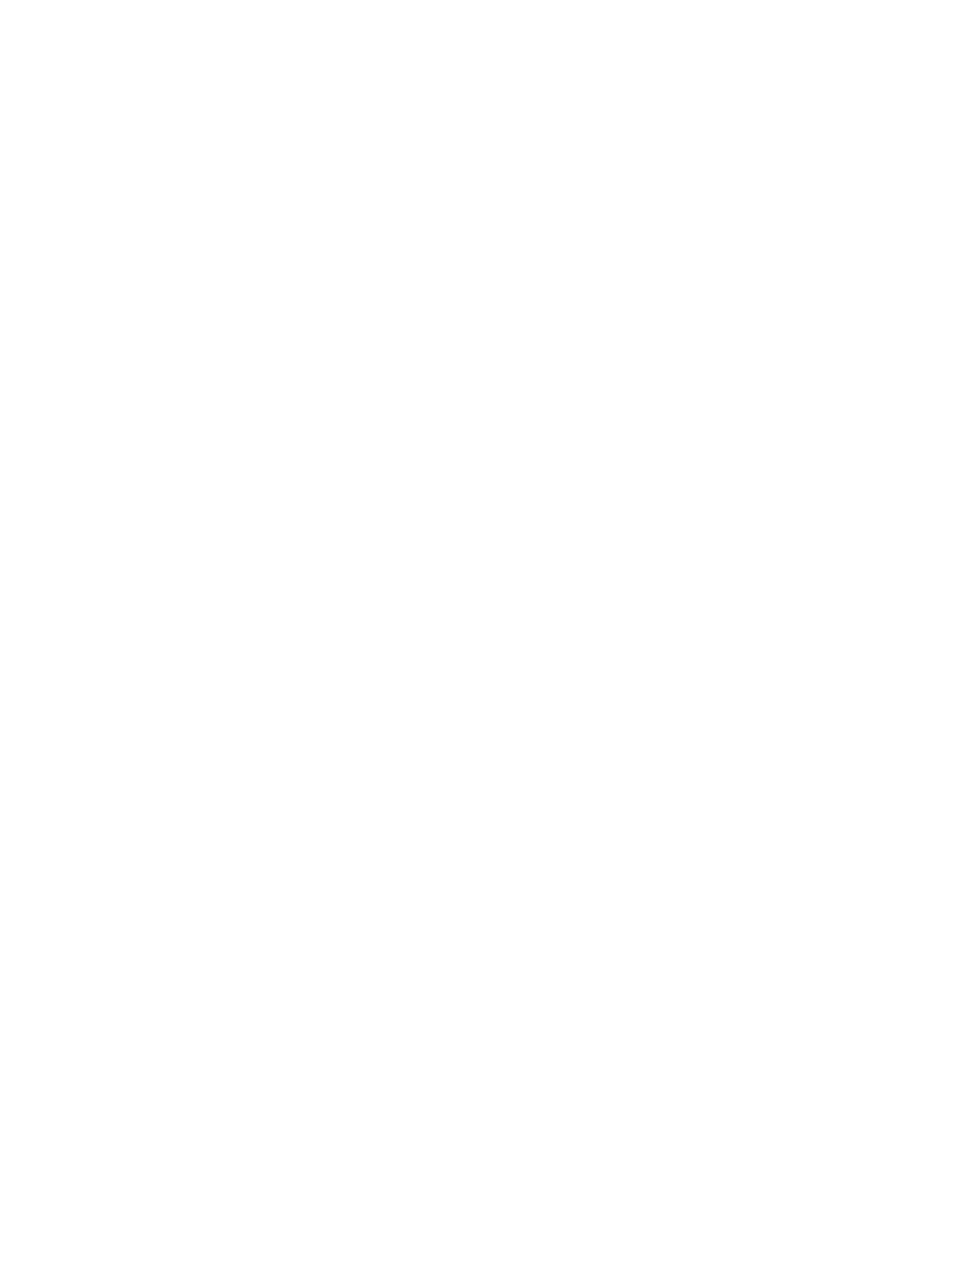 Панно из можжевельника с текстоим, корпоративнфе логотипы